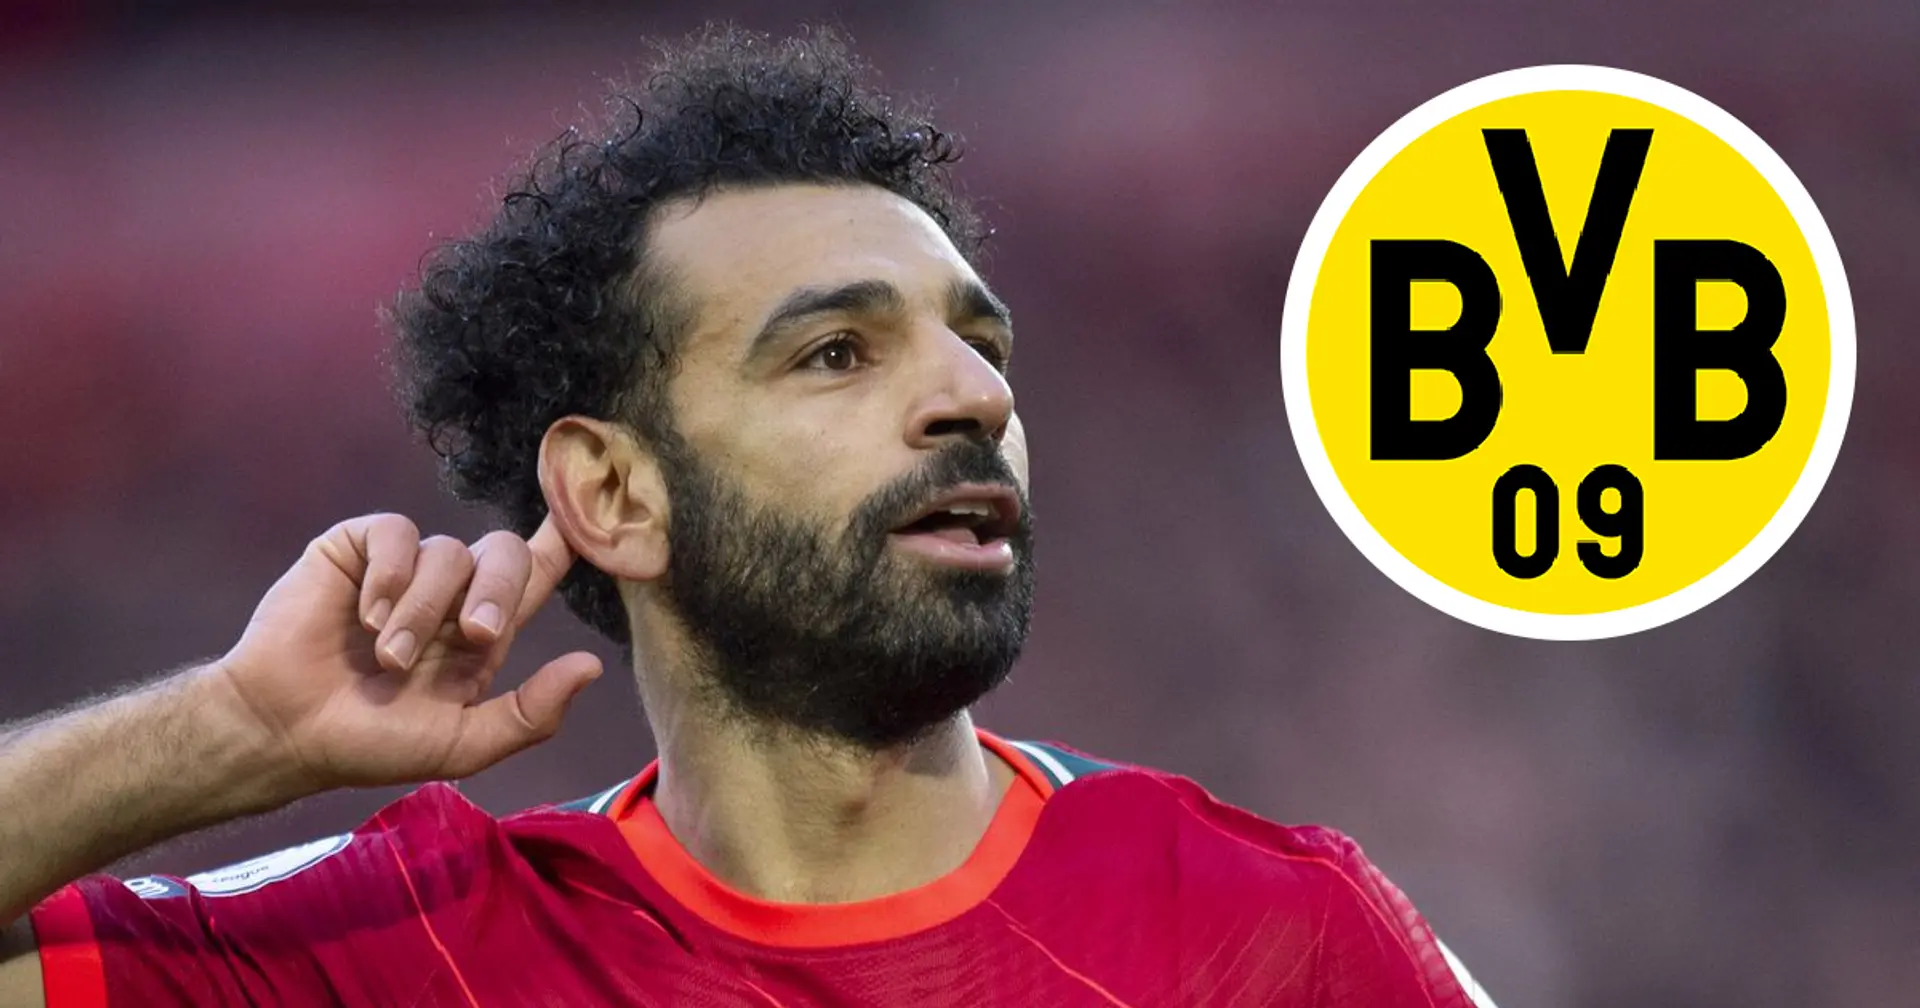 Salahs Freund: "Mohamed hatte eine Offerte vom BVB, lehnte sie aber ab"